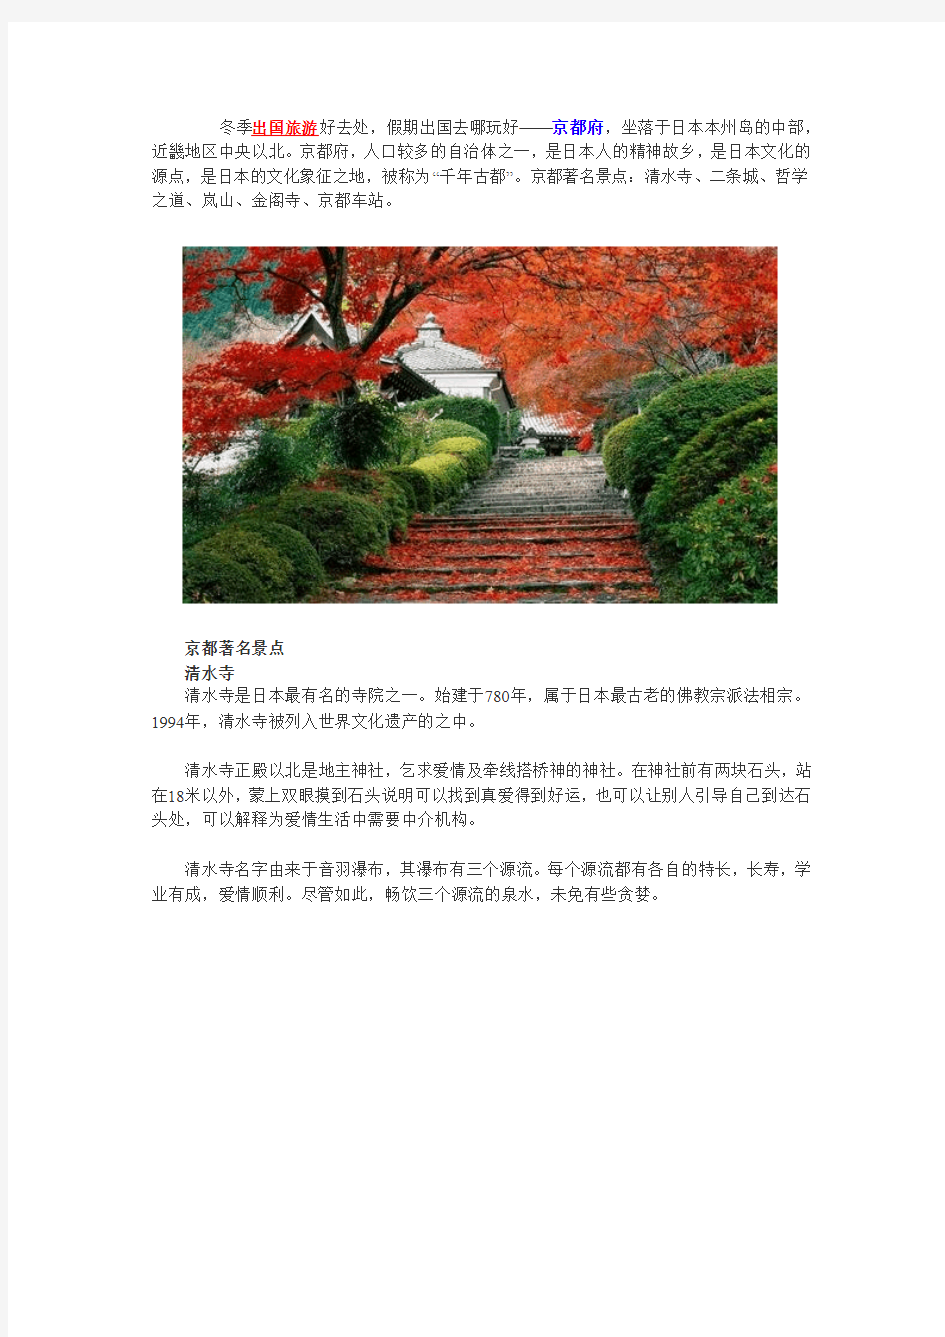 冬季出国旅游推荐,京都著名旅游景点介绍